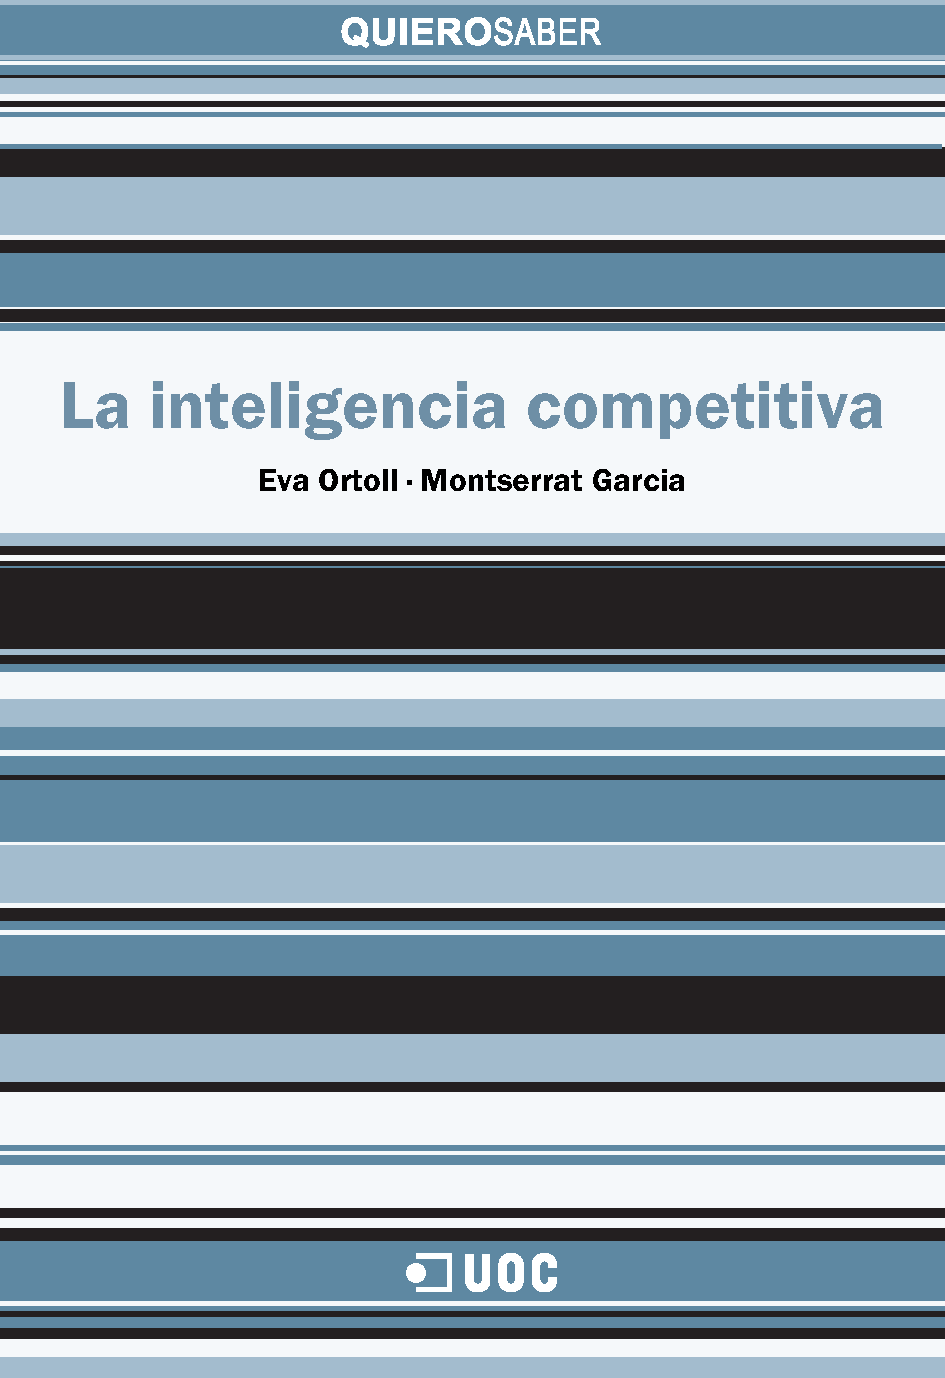 La inteligencia competitiva